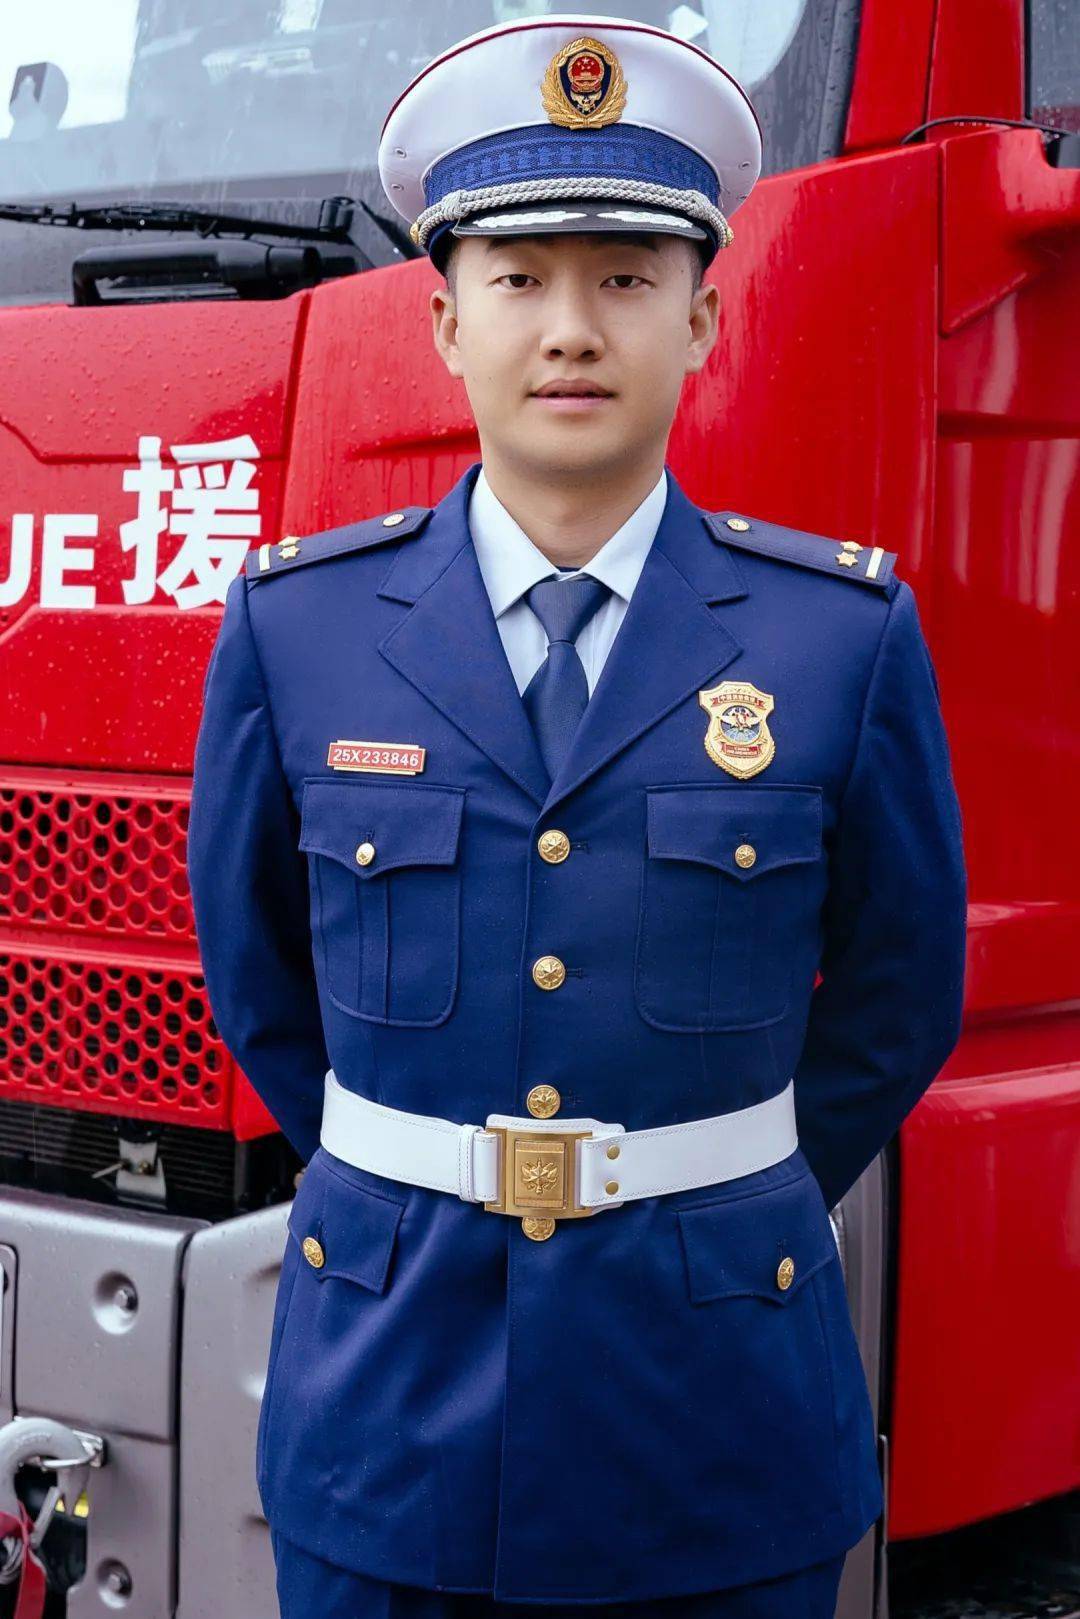 的制服弥渡县消防救援大队全家福不会还有人以为消防员只穿一身蓝吧